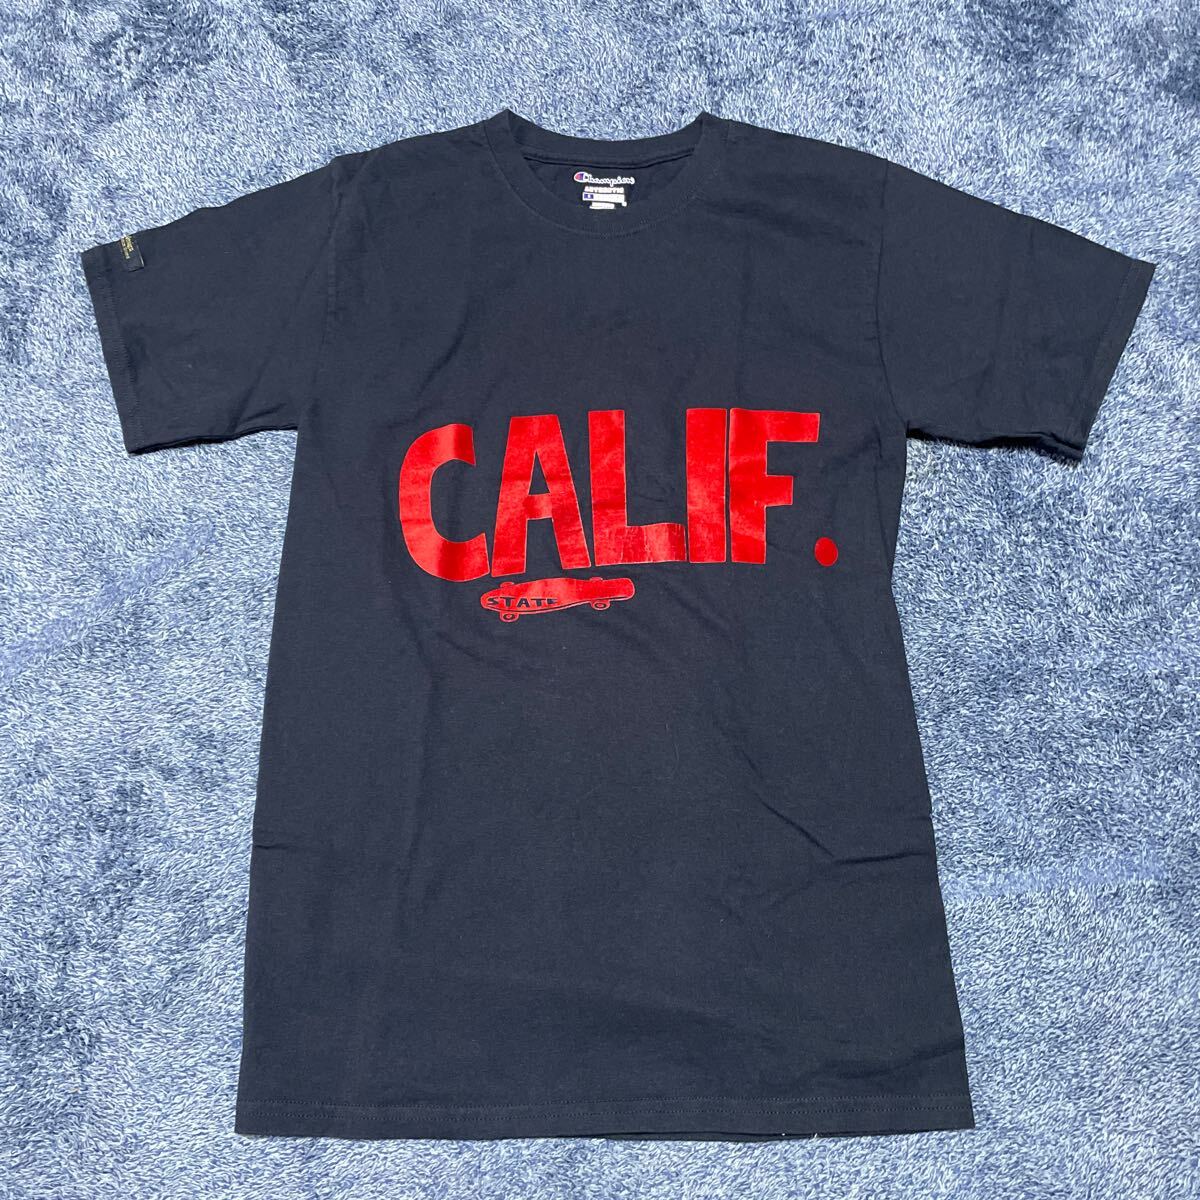 CALIF STATE チャンピオン Tシャツ メンズサイズS_画像1